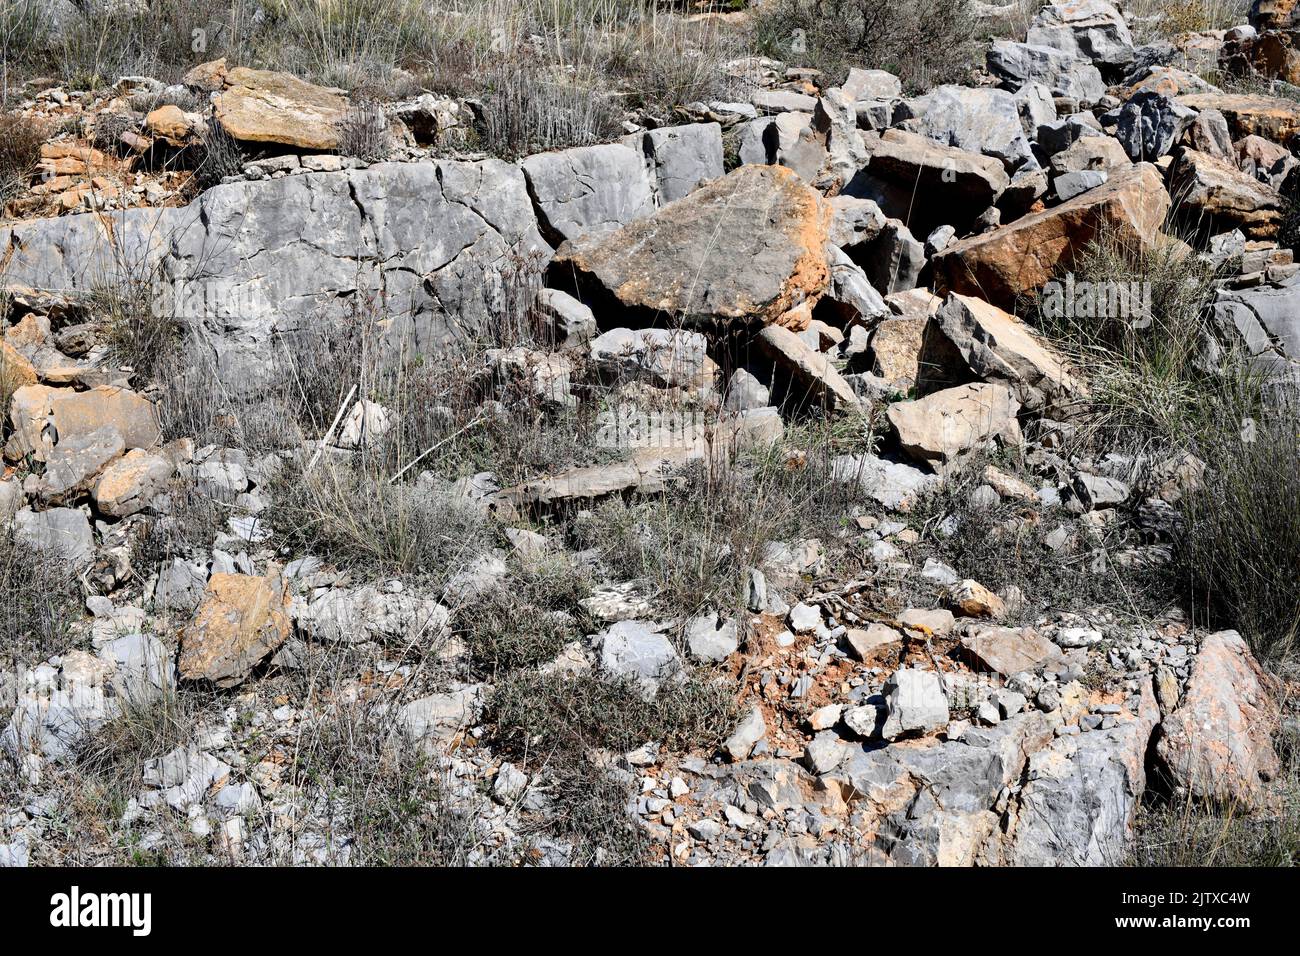 Schwarzer Kalkstein aus Jurassic. Dieses Foto wurde in Aldealpozo, Soria, Castilla y Leon, Spanien aufgenommen. Stockfoto